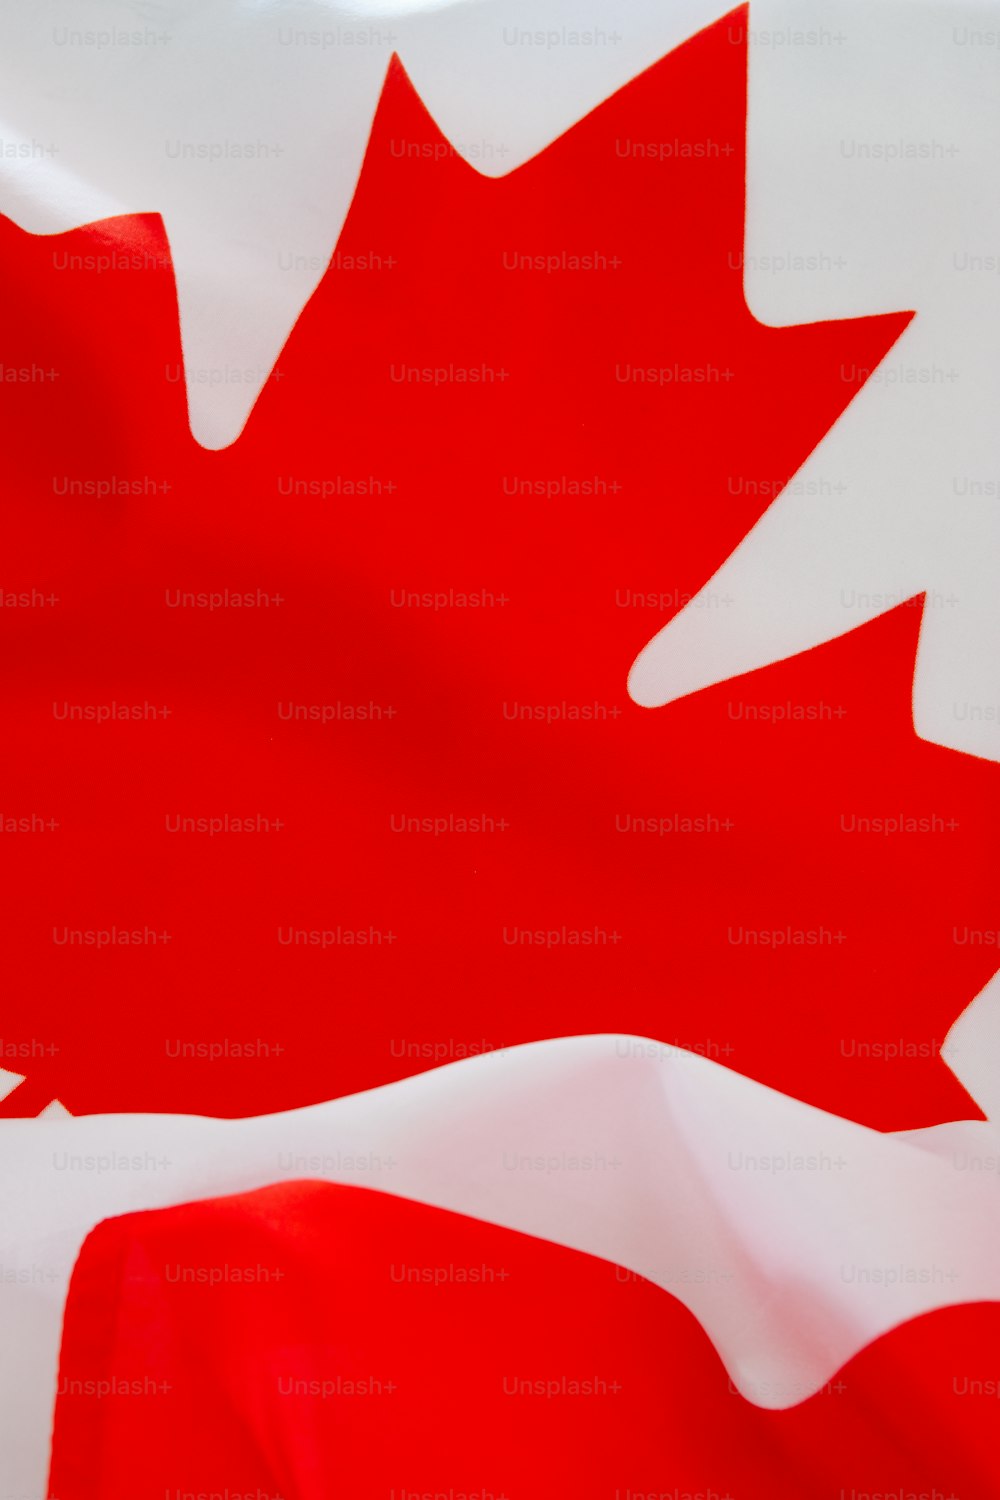 赤いカエデの葉が描かれたカナダの国旗